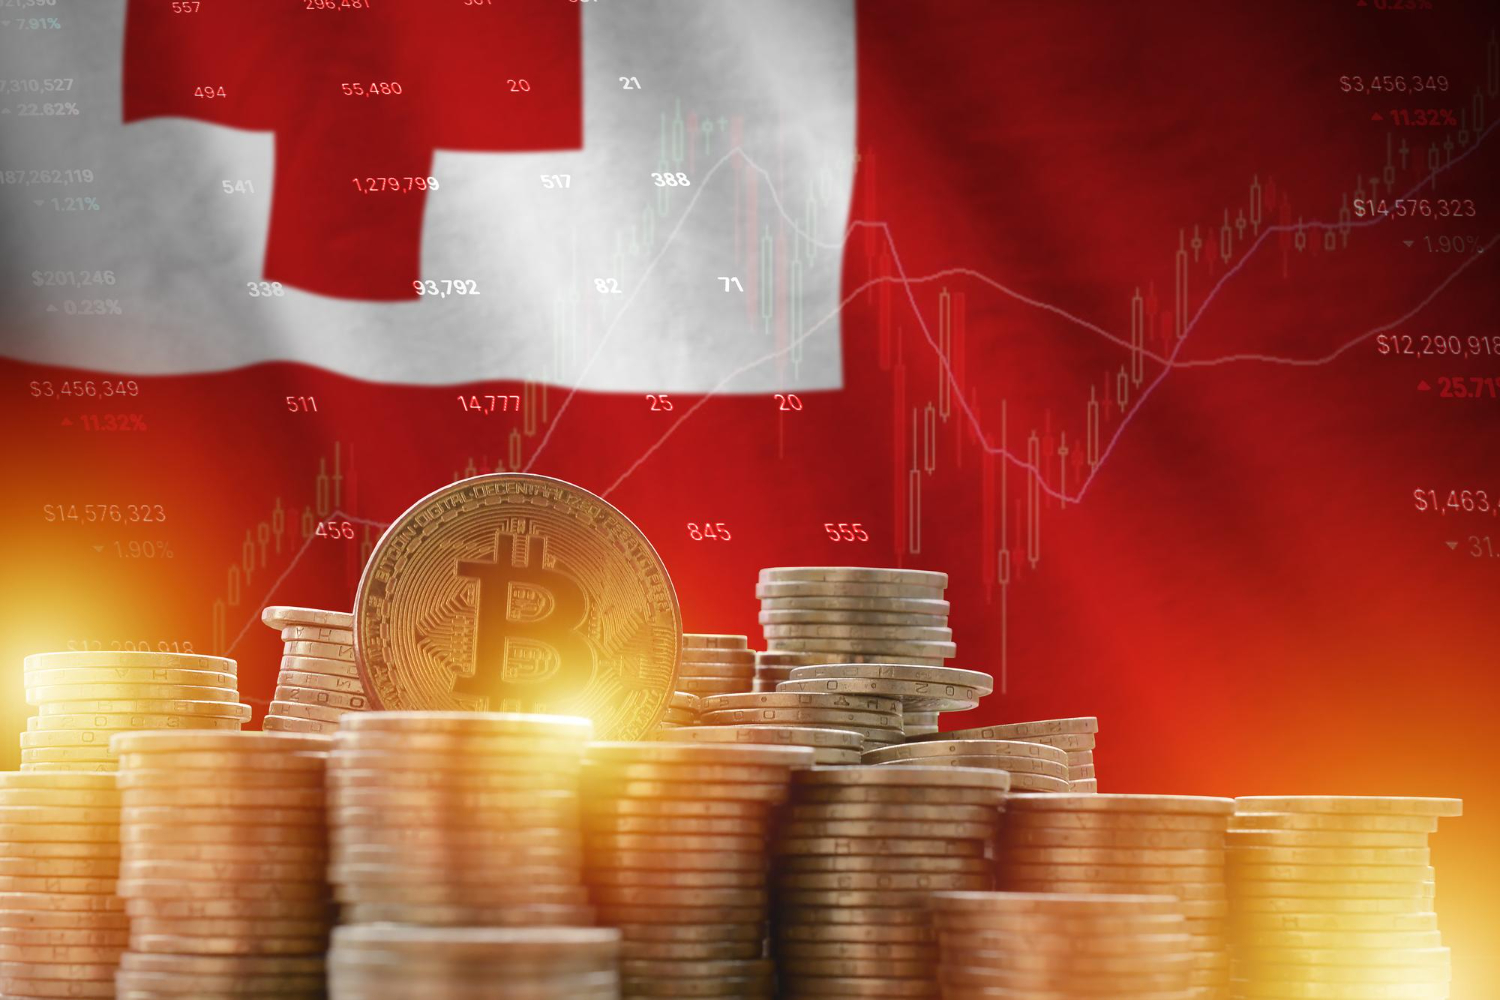 Società svizzera di gestione patrimoniale e rimesse FINMA